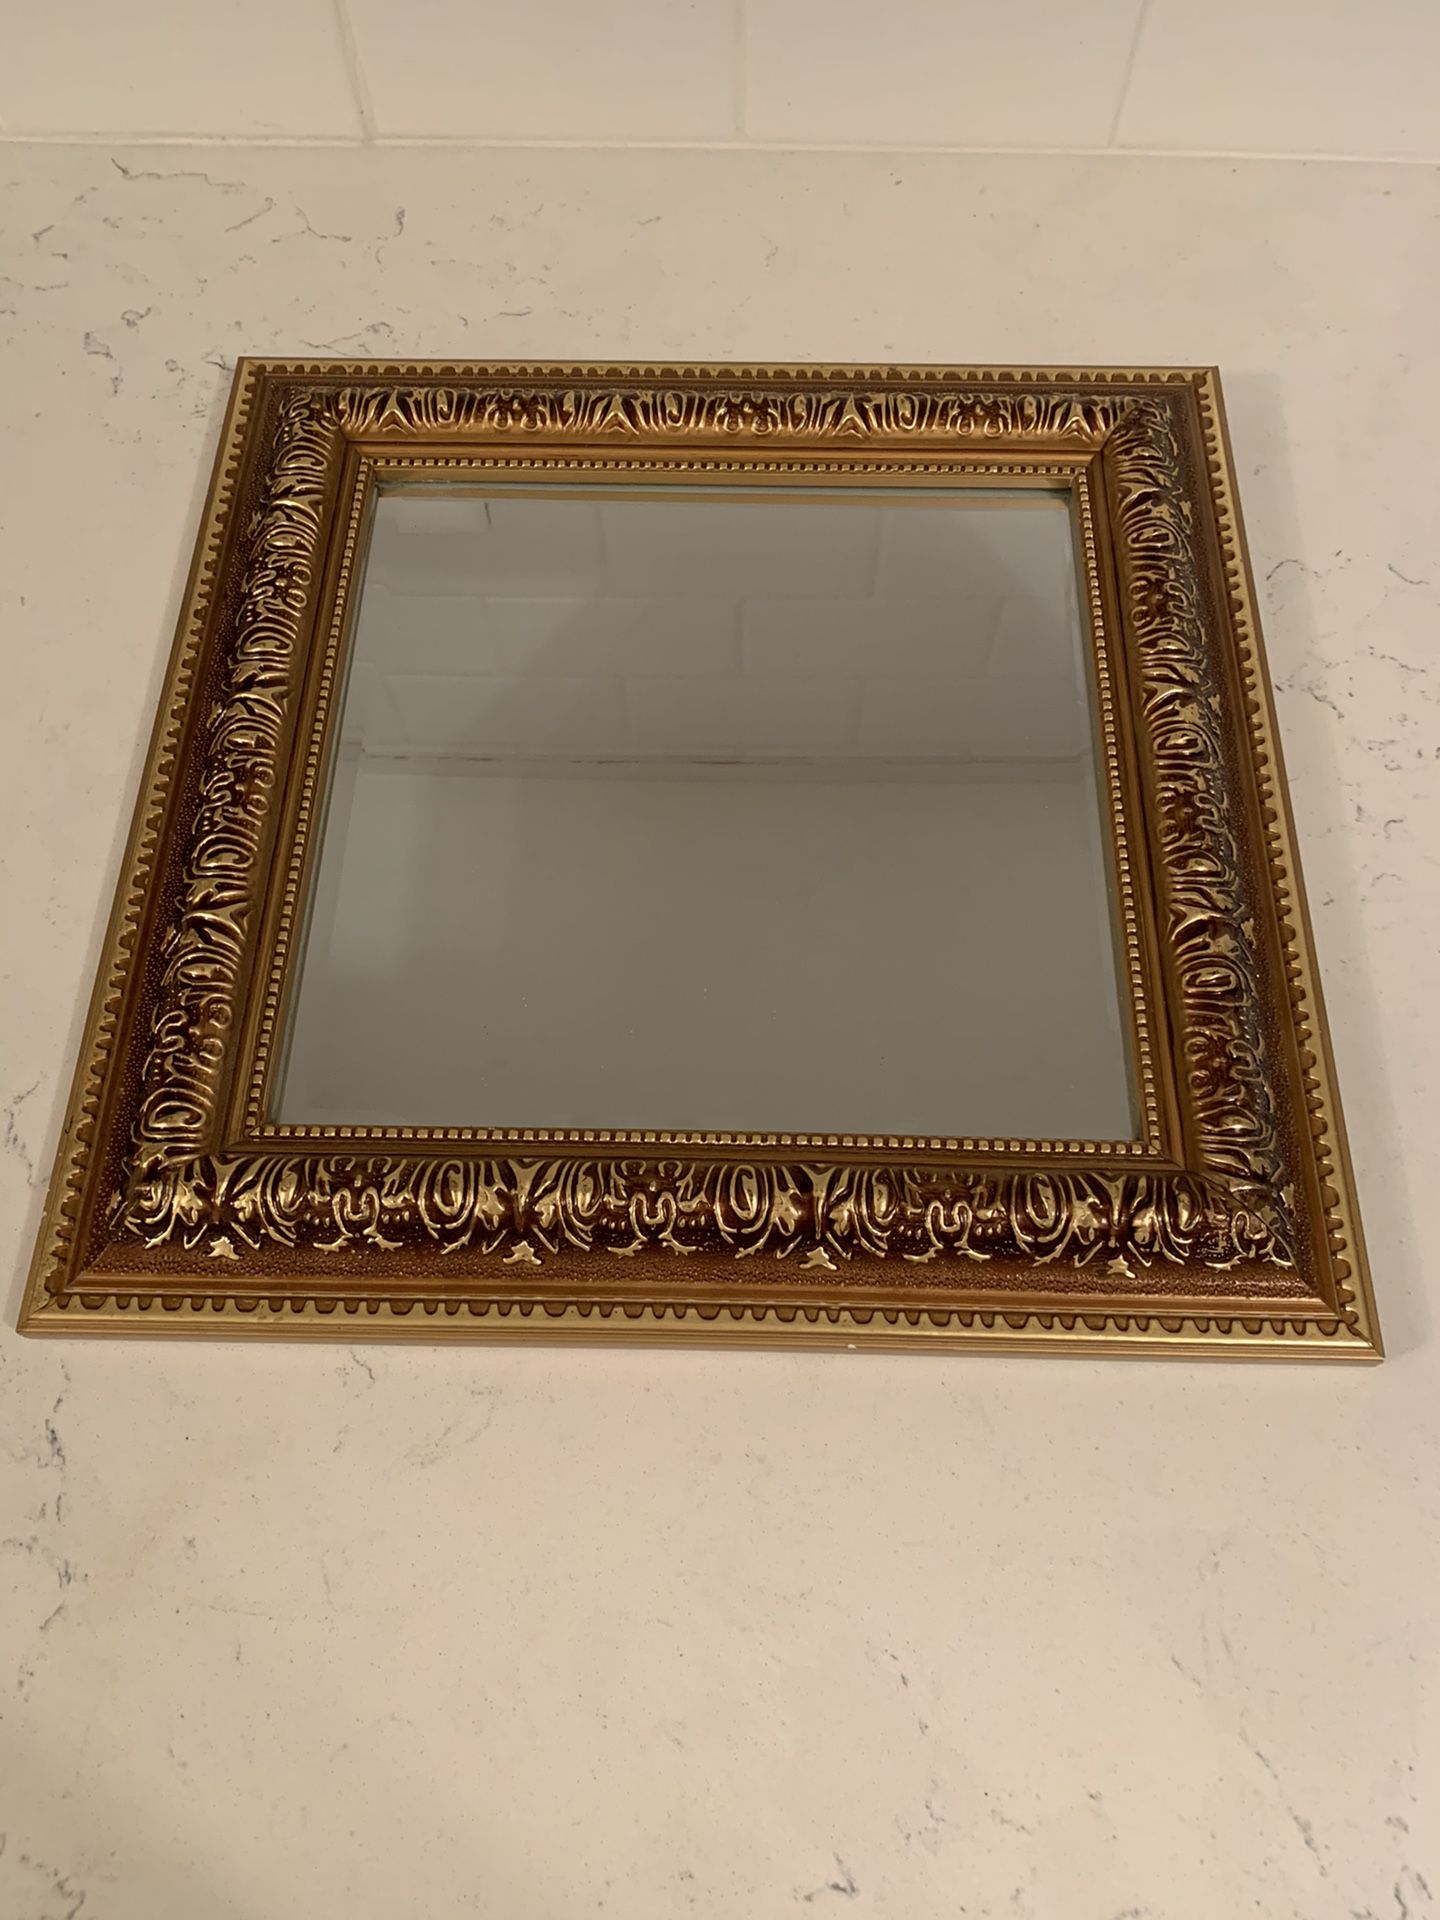 Gold tone ornate mirror